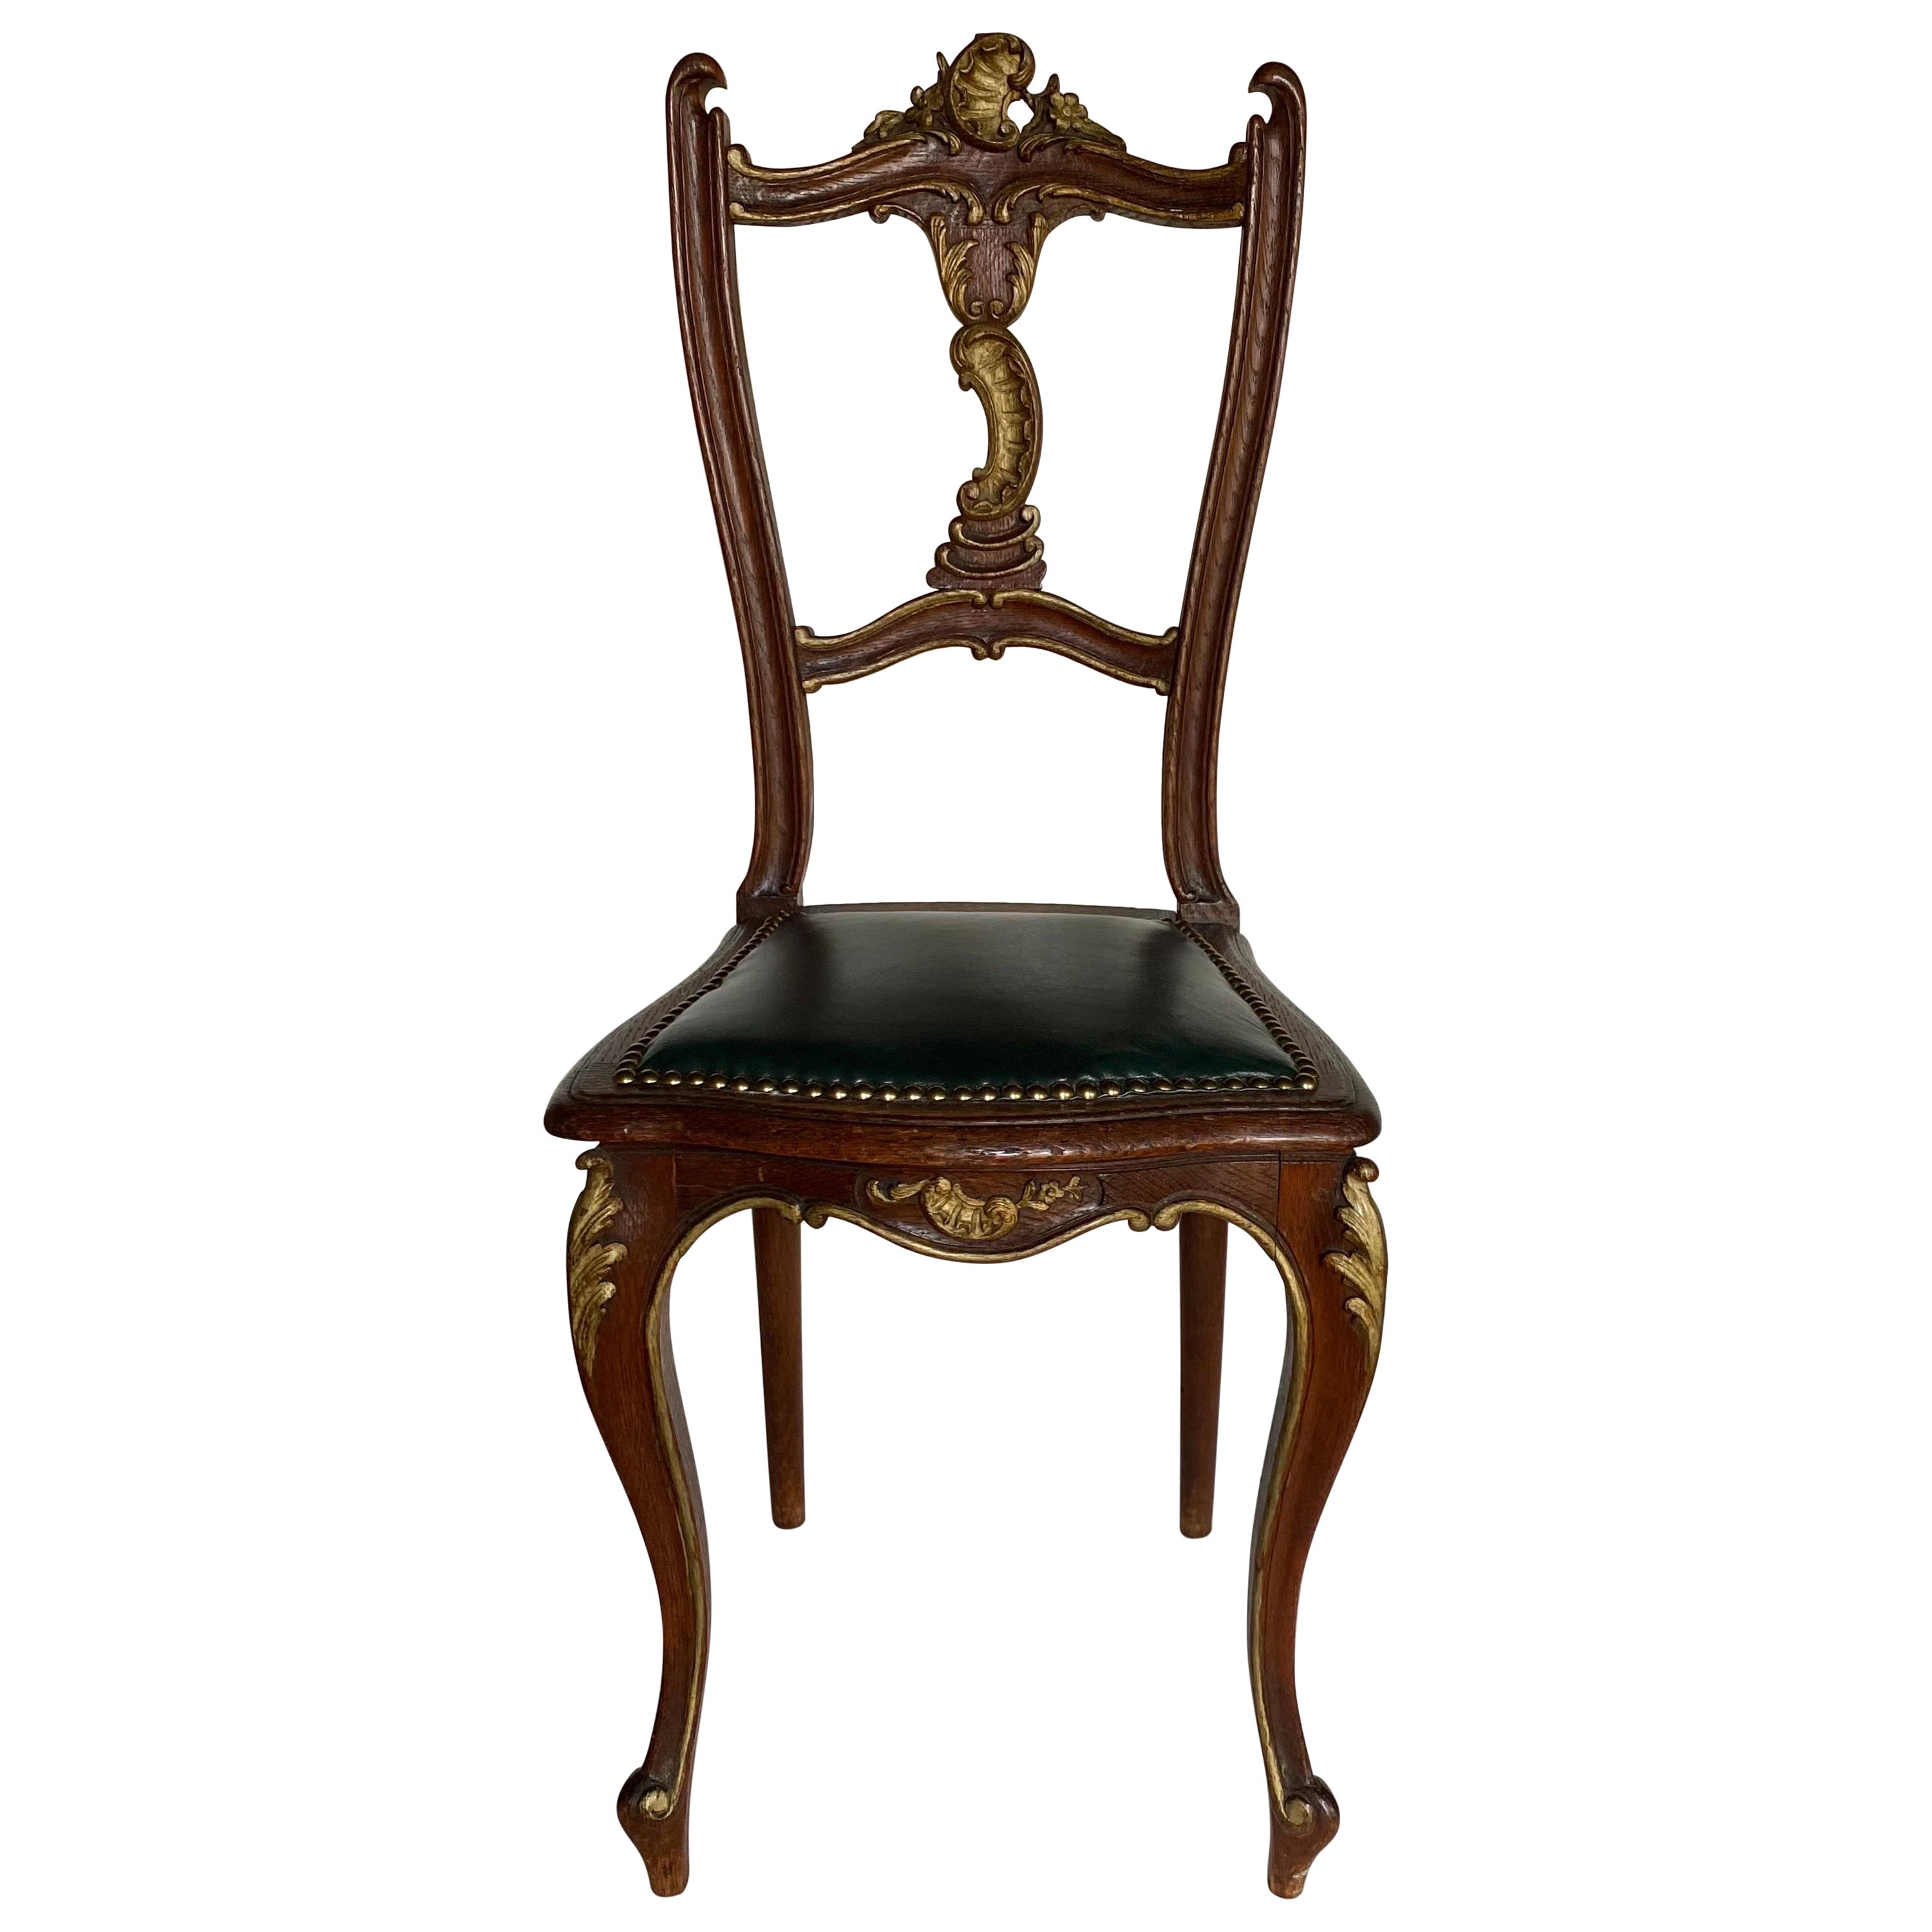 Chaise d'appoint en bois doré sculpté de style Louis XV avec détails latéraux en cuir